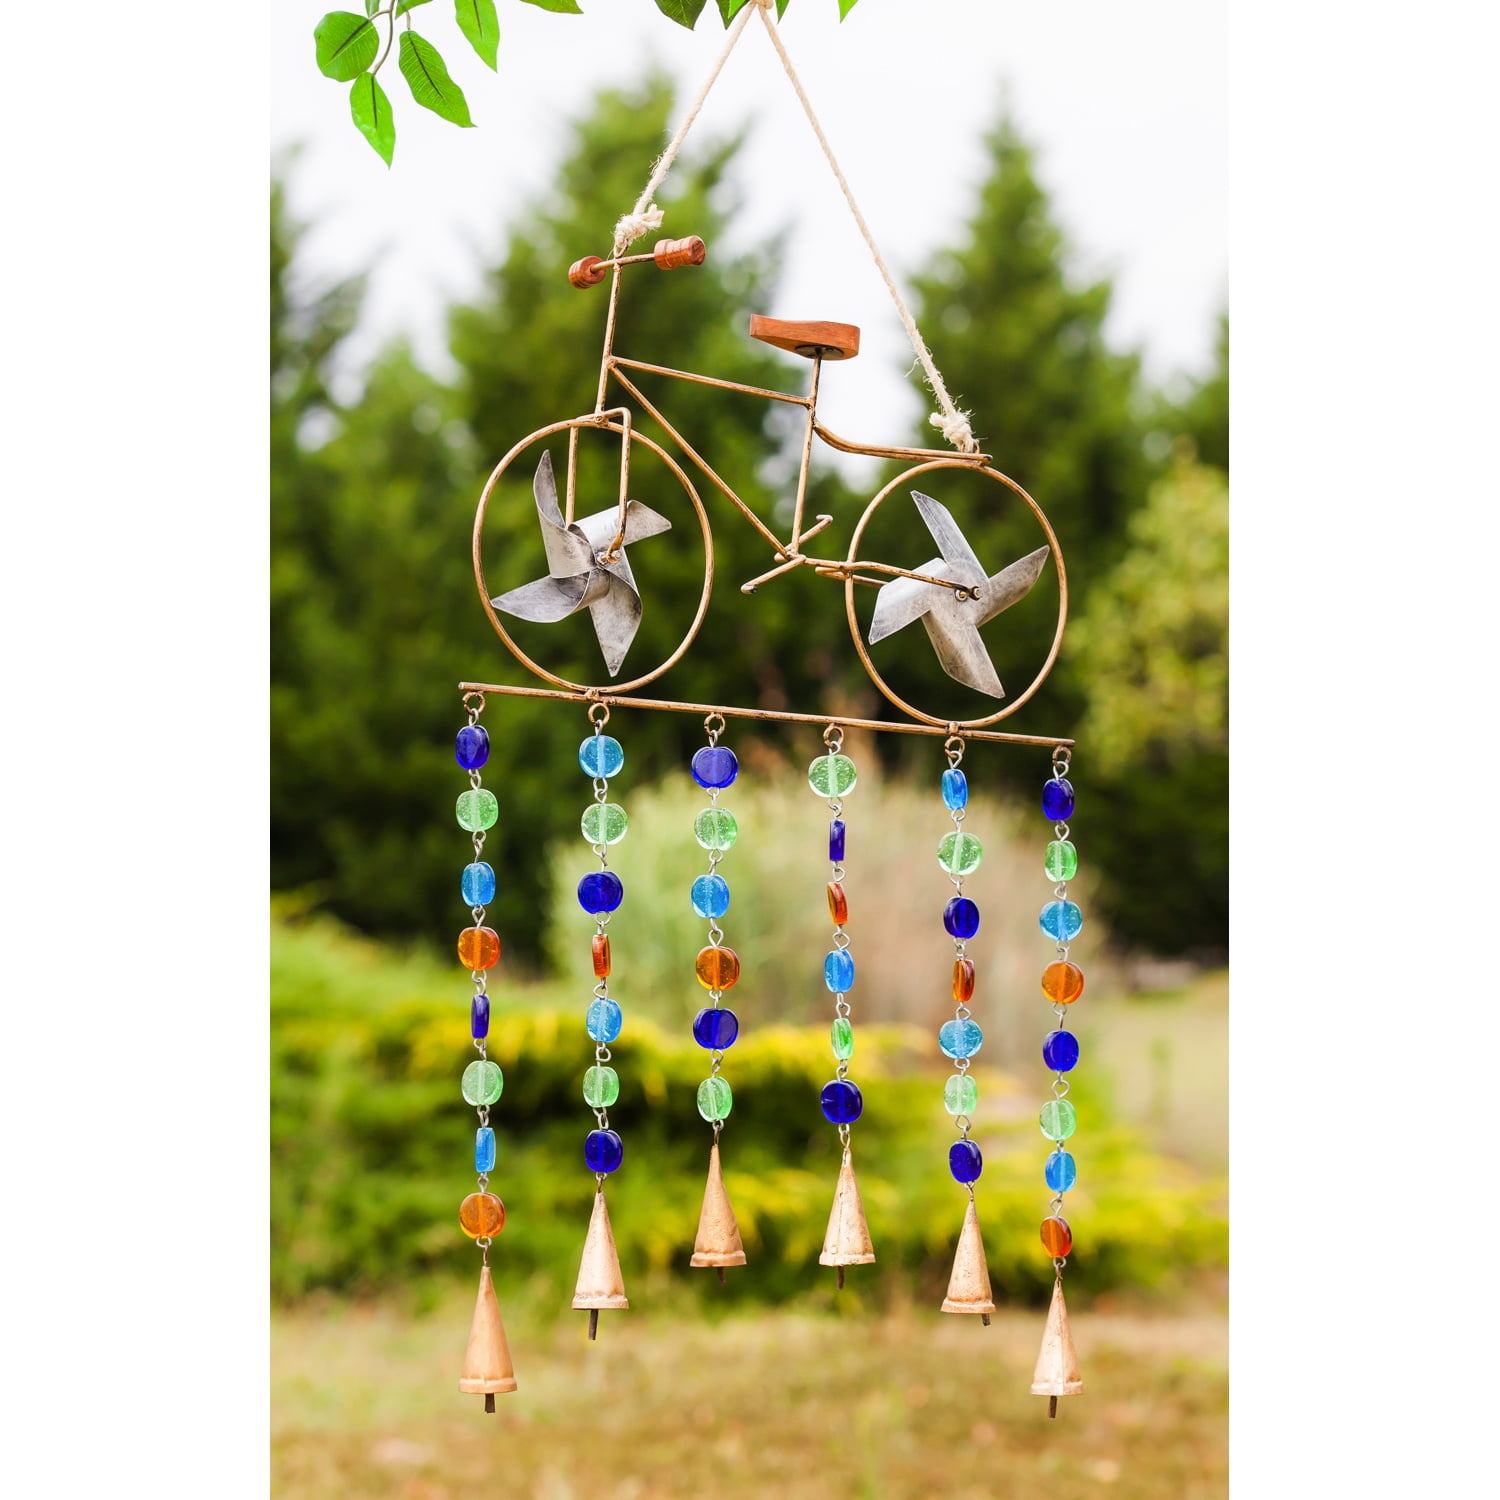 Evergreen Pinwheel Bicycle Garden Bells